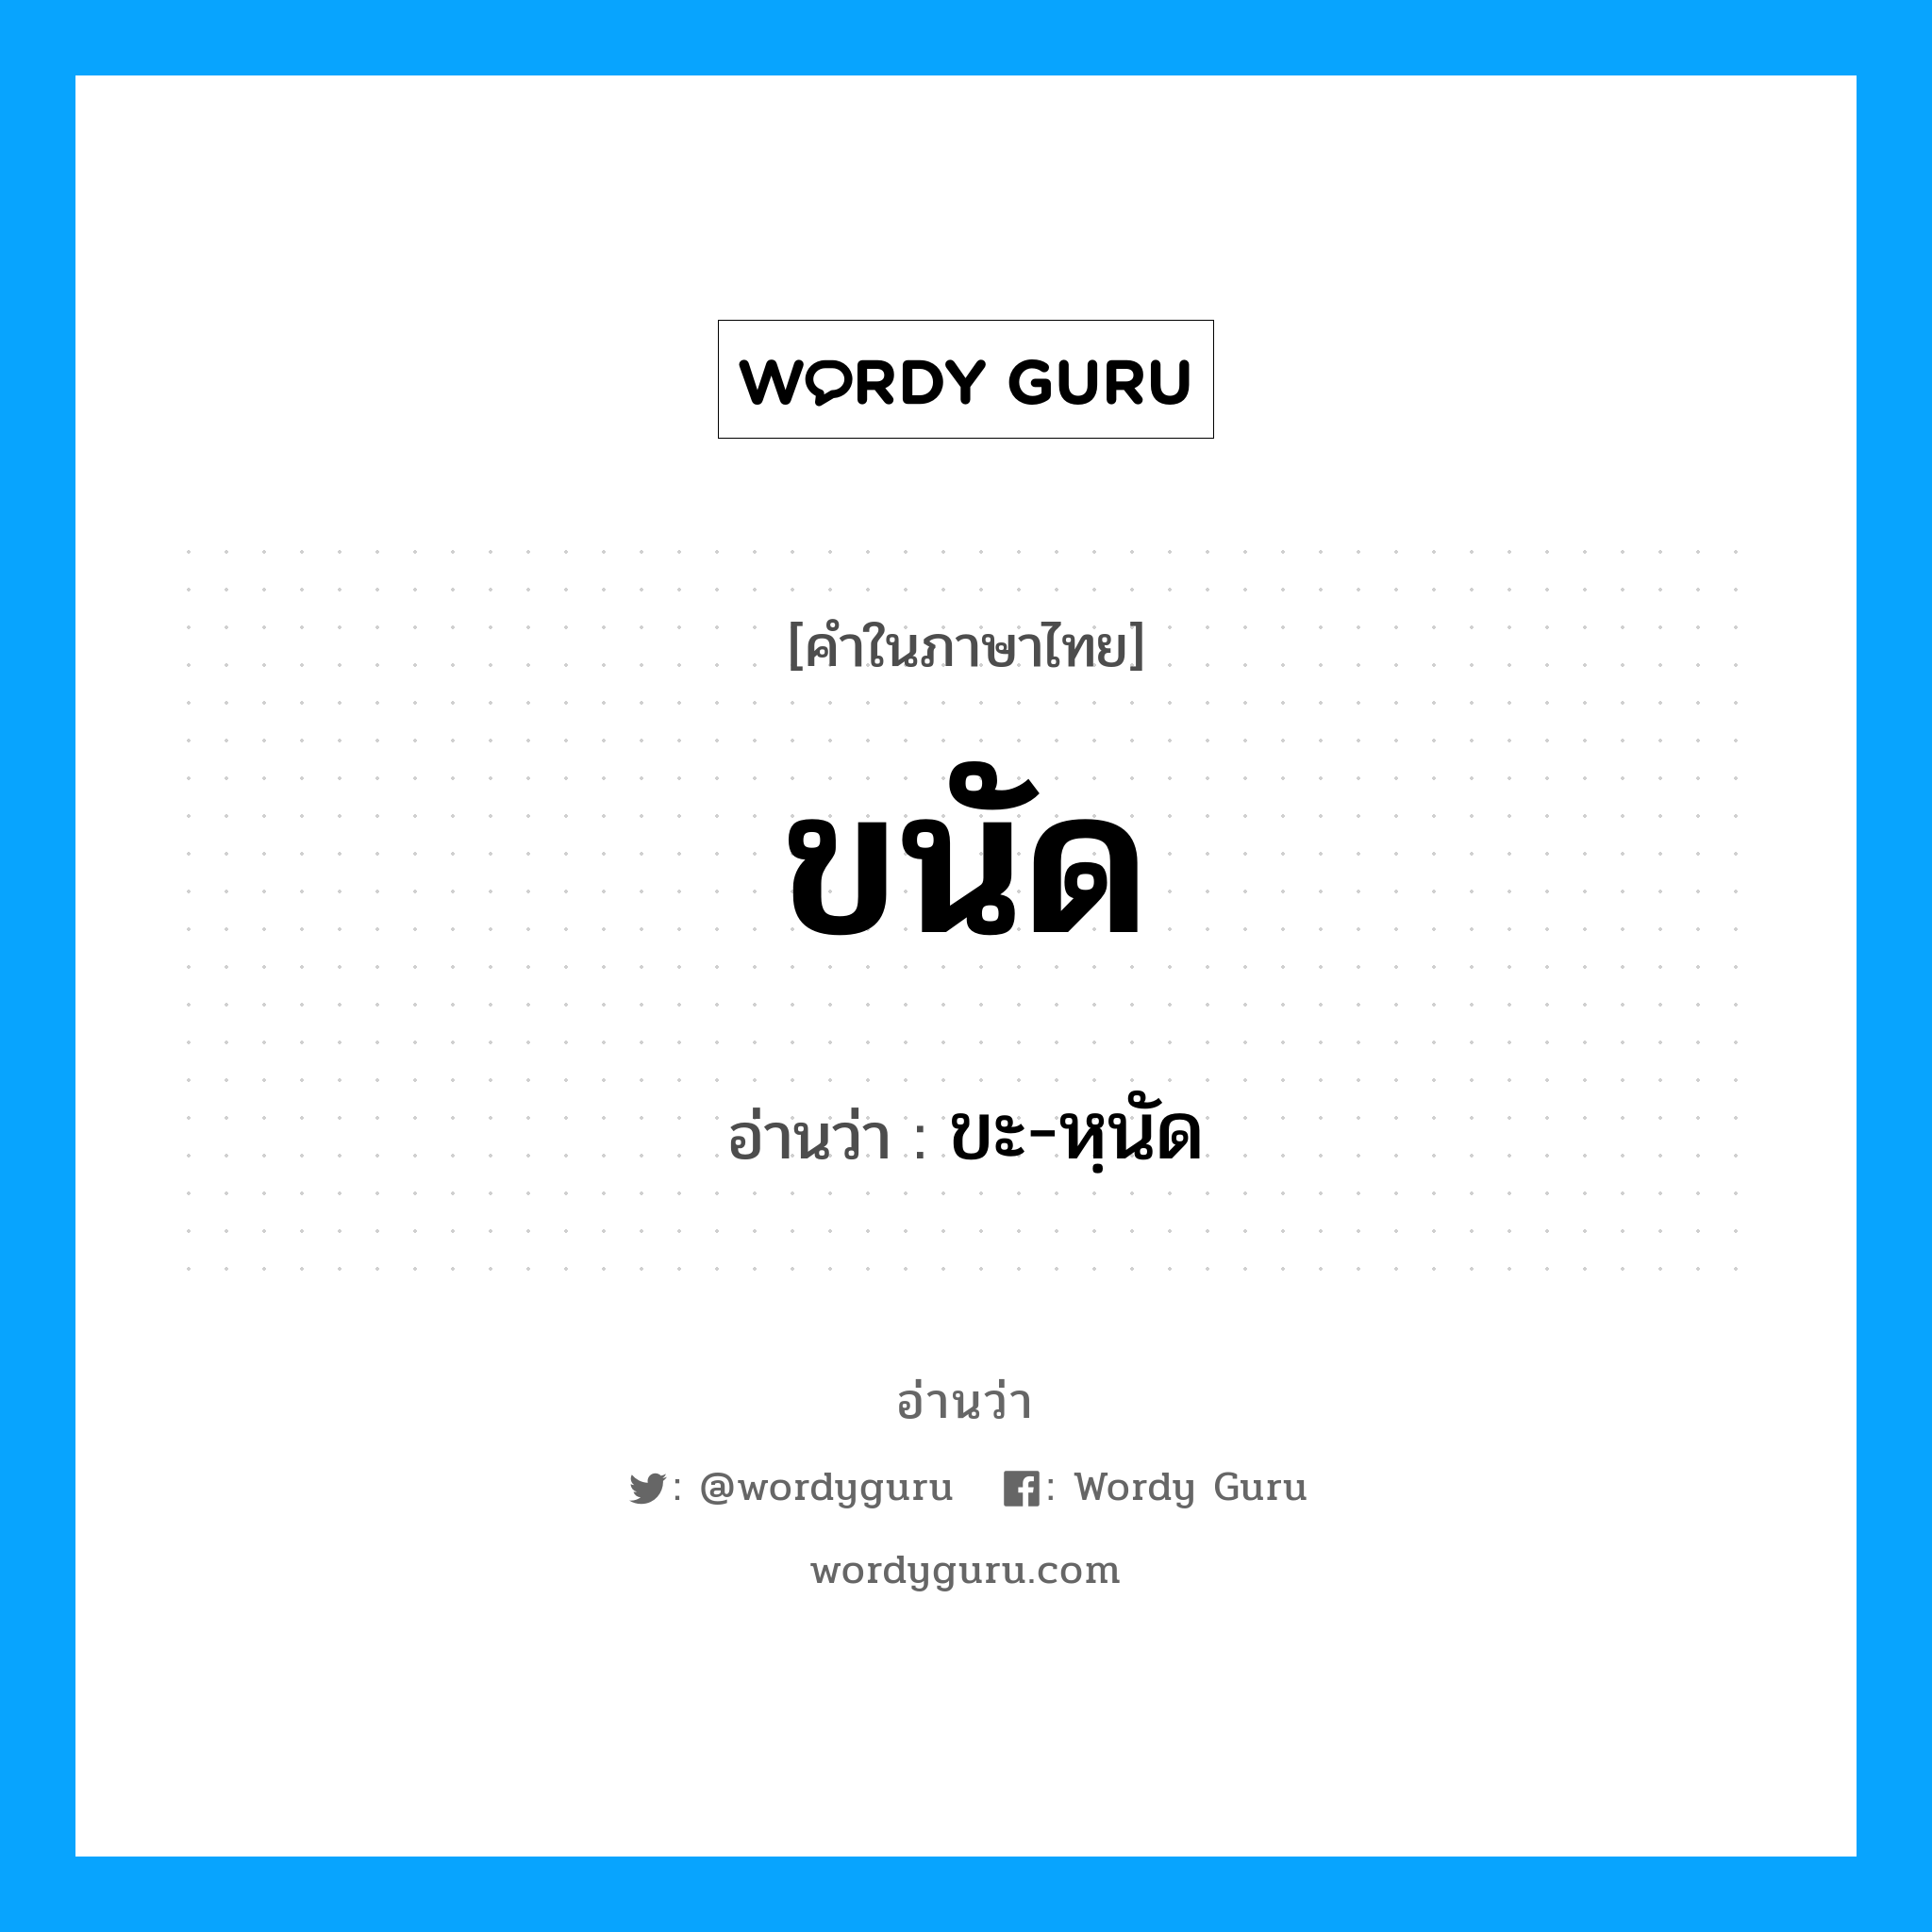 ขะ-หฺนัด เป็นคำอ่านของคำไหน?, คำในภาษาไทย ขะ-หฺนัด อ่านว่า ขนัด